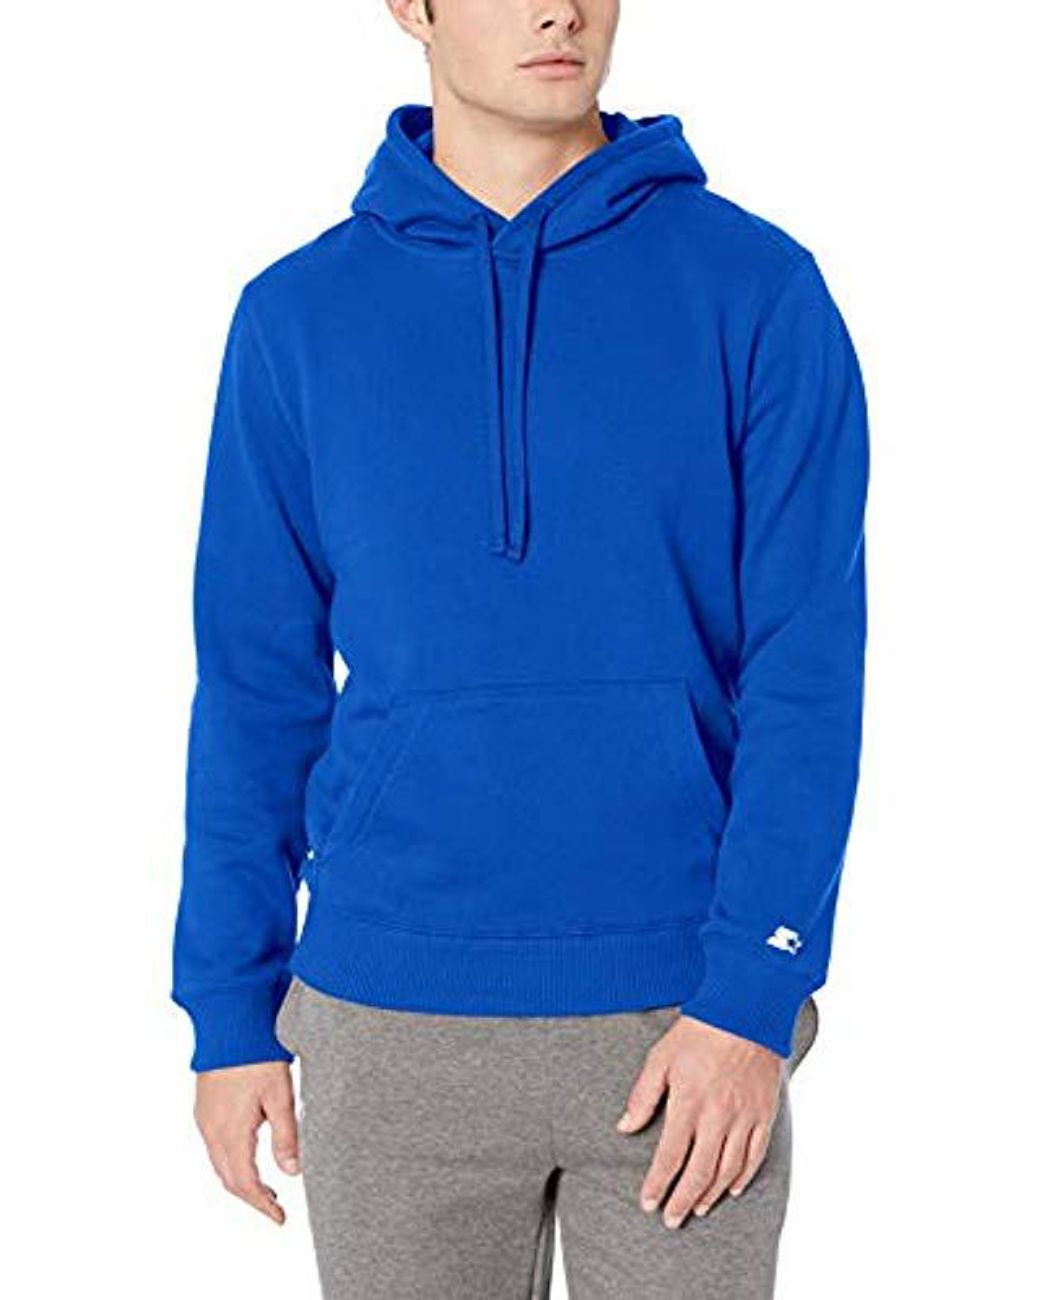 Starter Fleece Pullover Hoodie, Amazon Exclusive in Blue for Men - Lyst